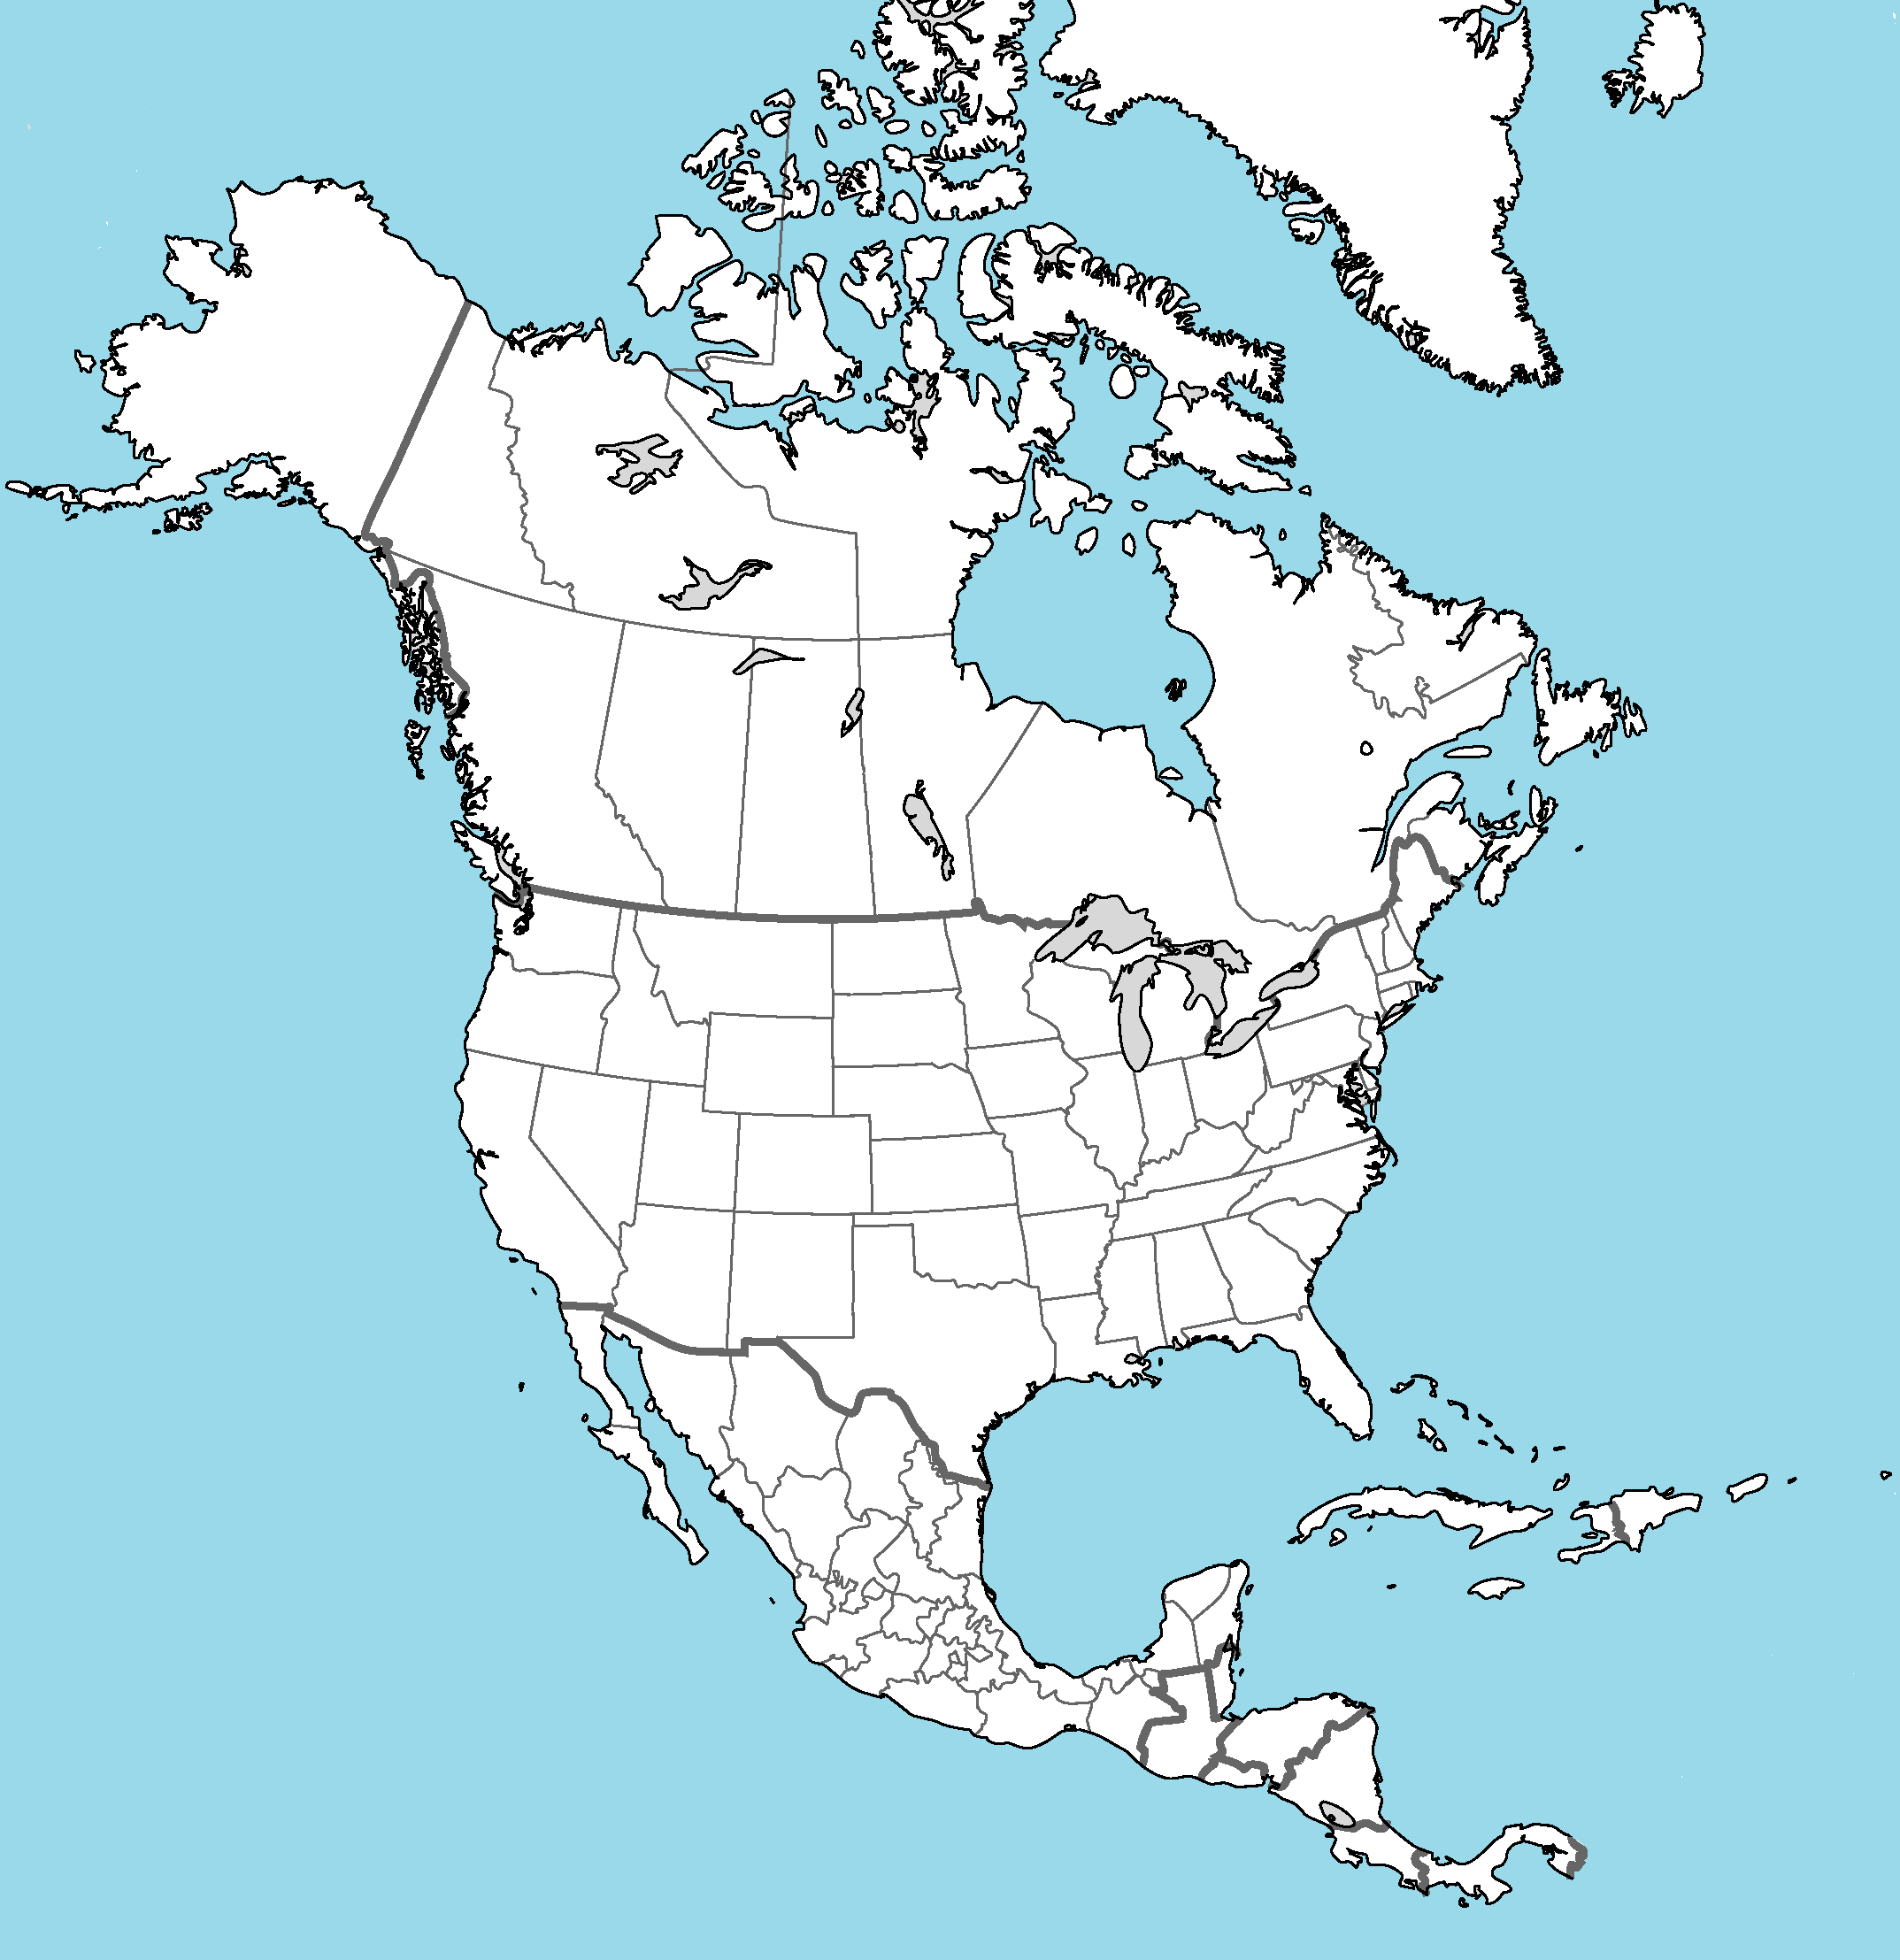 Северная америка работа с картой. Карта Северной Америки для маппинга с провинциями. Контурная карта Северной Америки. Северная Америка Америка. Политическая карта Северной Америки без названий.